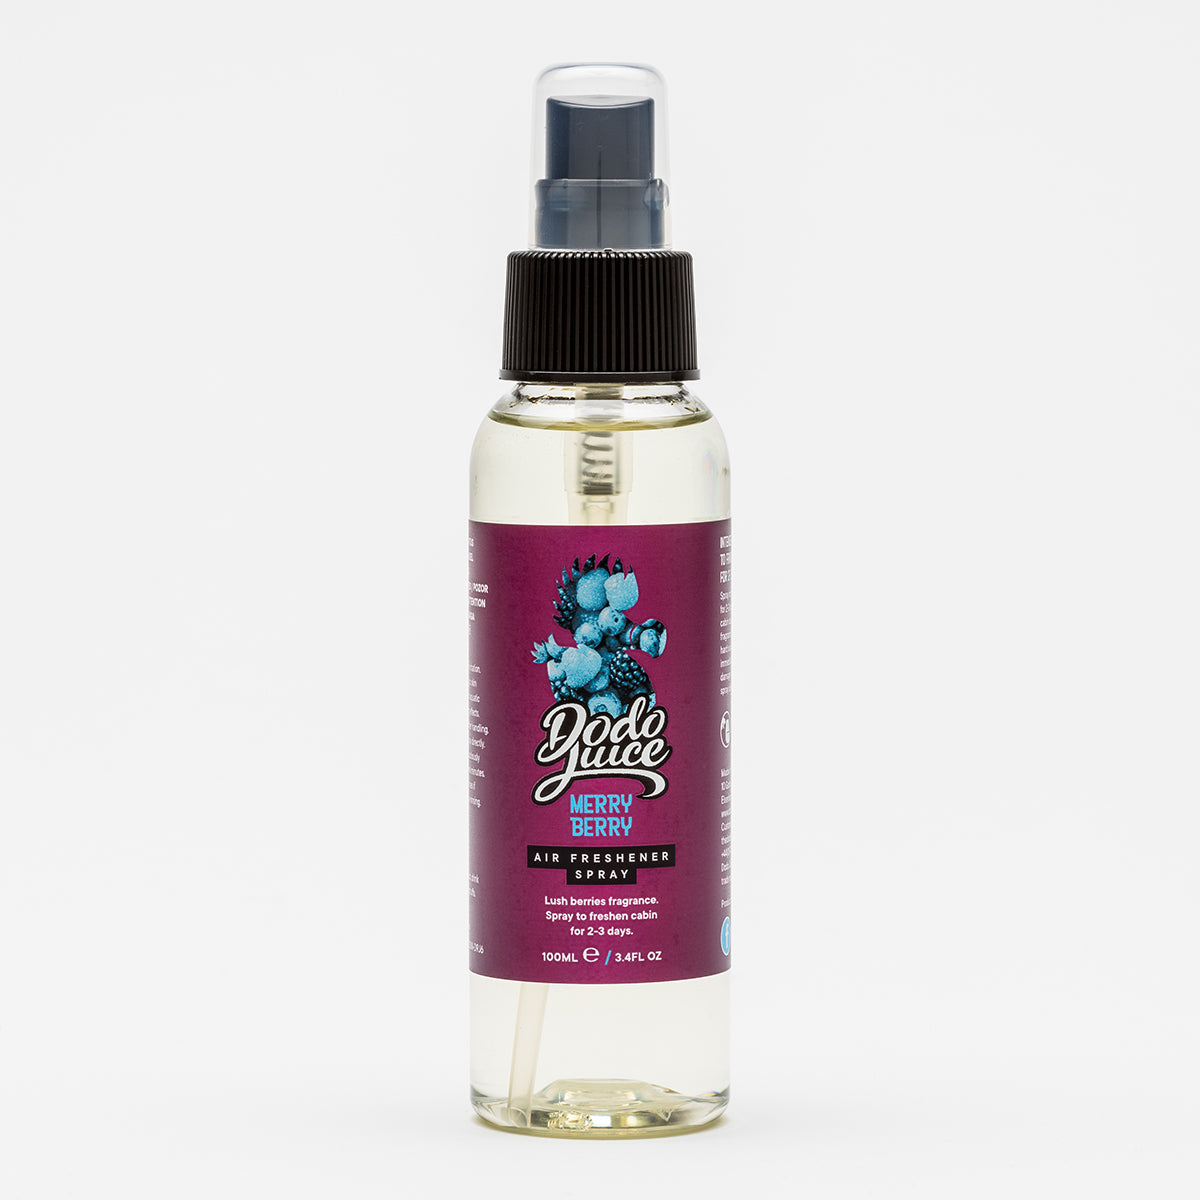 Merry Berry 100ml - lush berry fragrance air freshener spray HS 9616101000